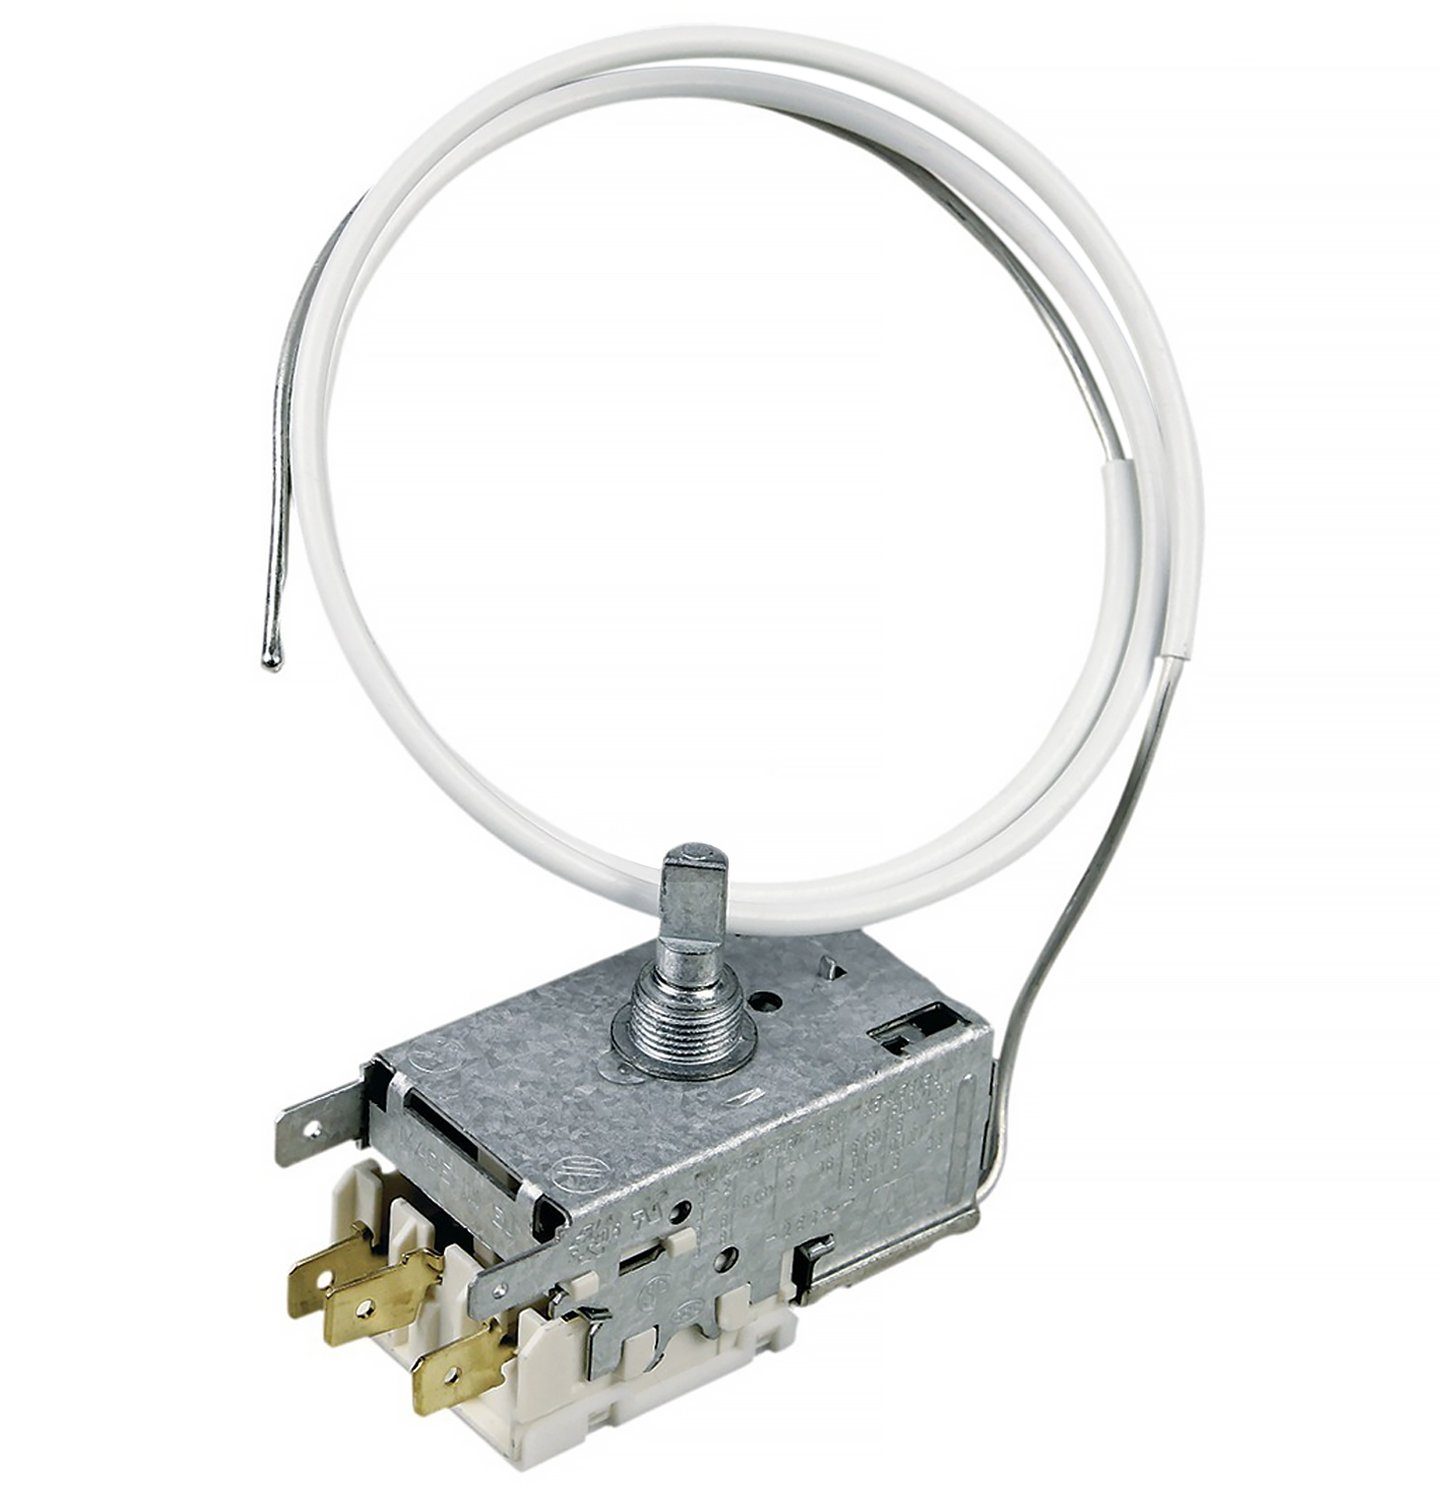 Verkauf neuer Produkte durchgeführt VIOKS Thermodetektor Kühlthermostat Gefrierschrank Kühlschrank für Ranco K59-L1203, Ersatz für